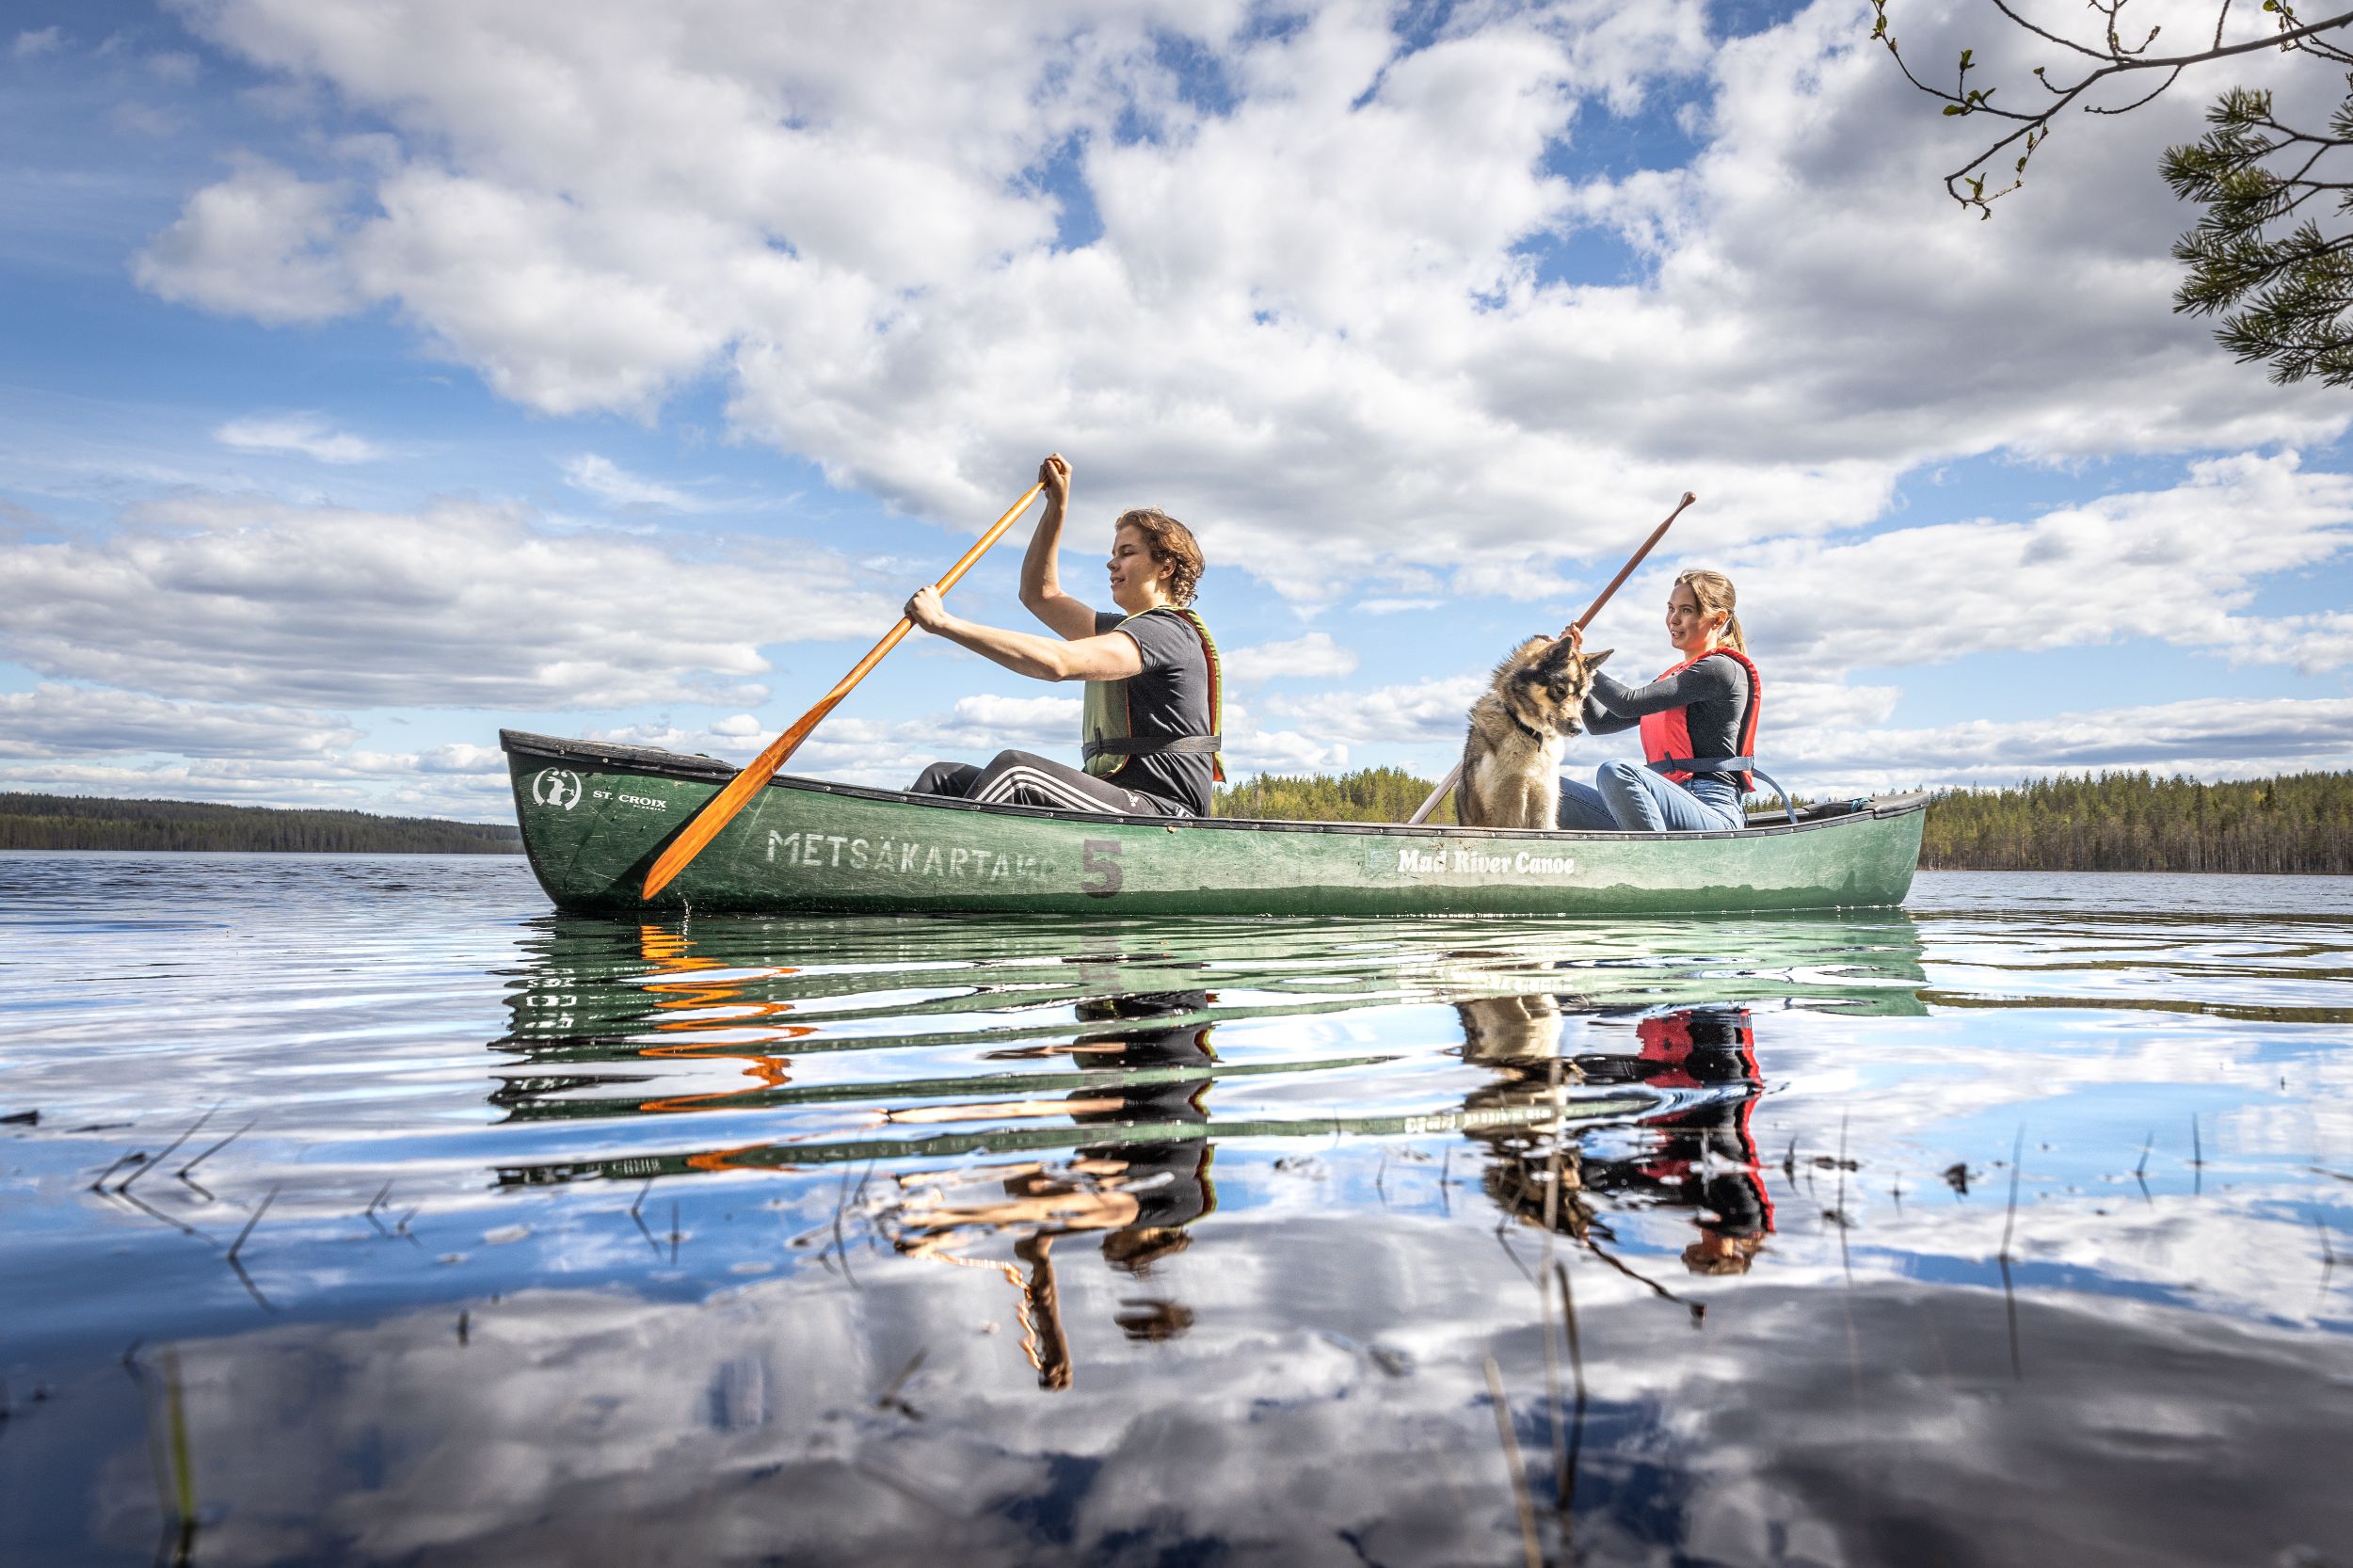 Metsäkartano Youth Centre canoeing